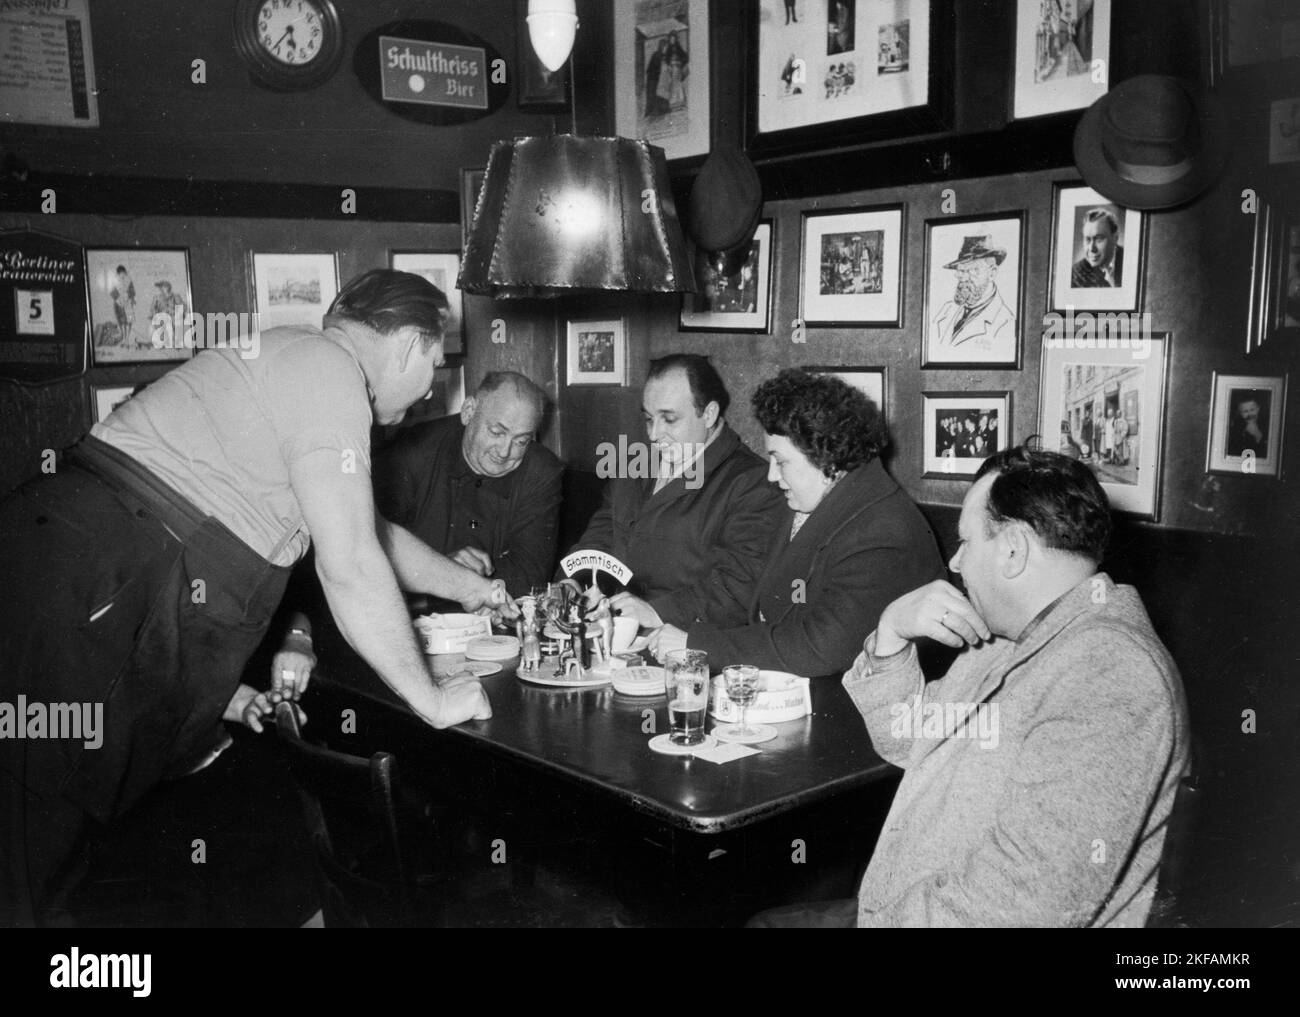 Ein Stammtischabend mit Männern und Frauen in der Sperlingsgasse Berlin, Deutschland 1960. Una serata con uomini e donne a Sperlingsgasse Berlino, Germania 1960. Foto Stock